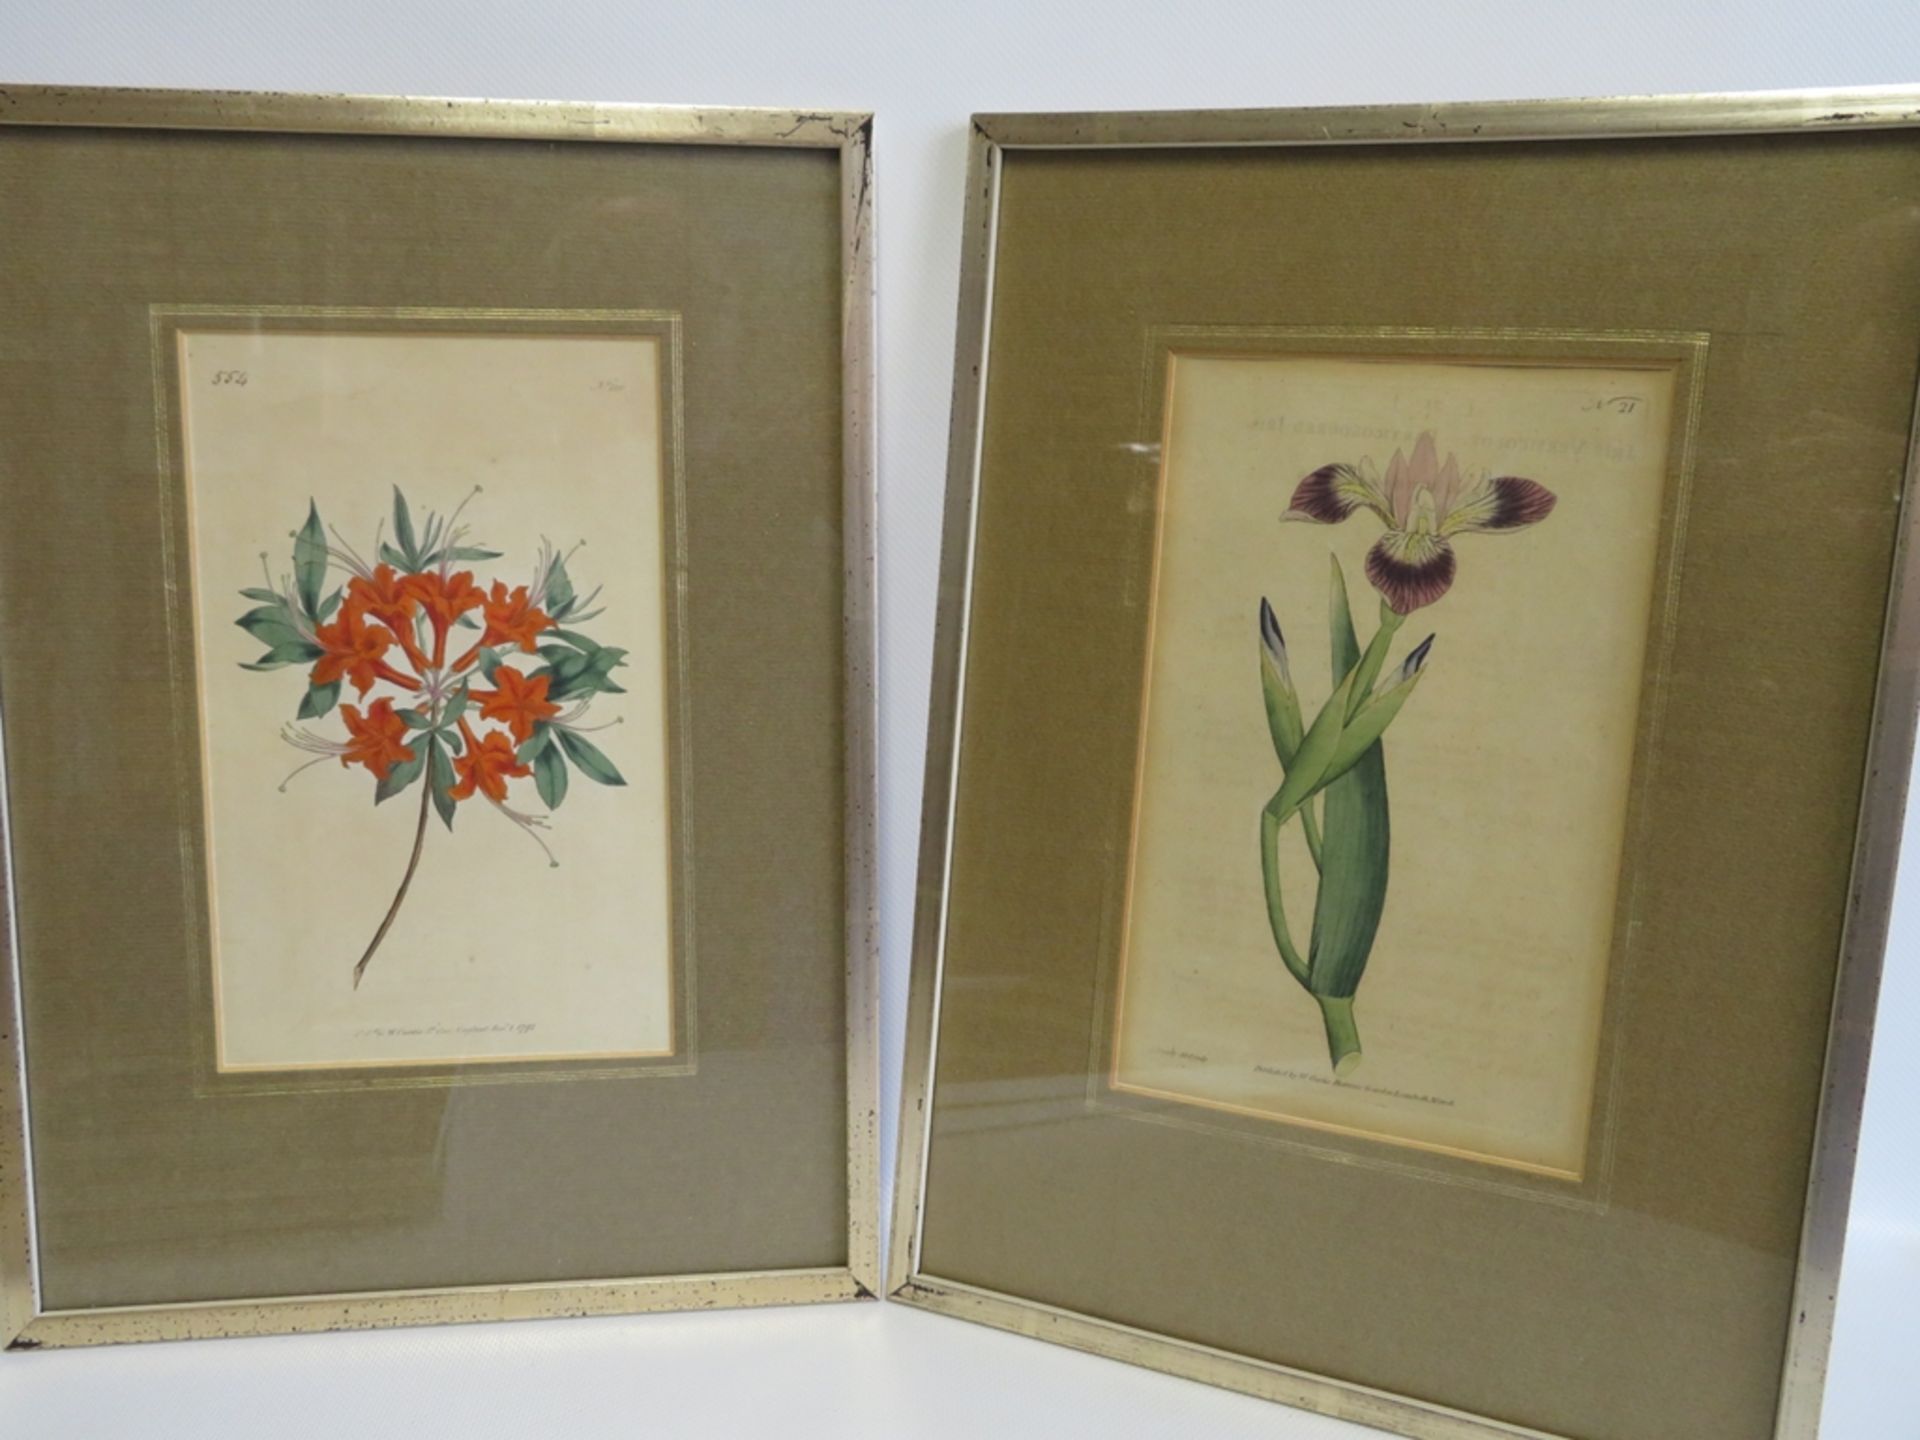 17 Blüten-Lithografien, England, um 1800, altcol., gestochen von F. Sonfom, hrsg. von William - Bild 3 aus 3